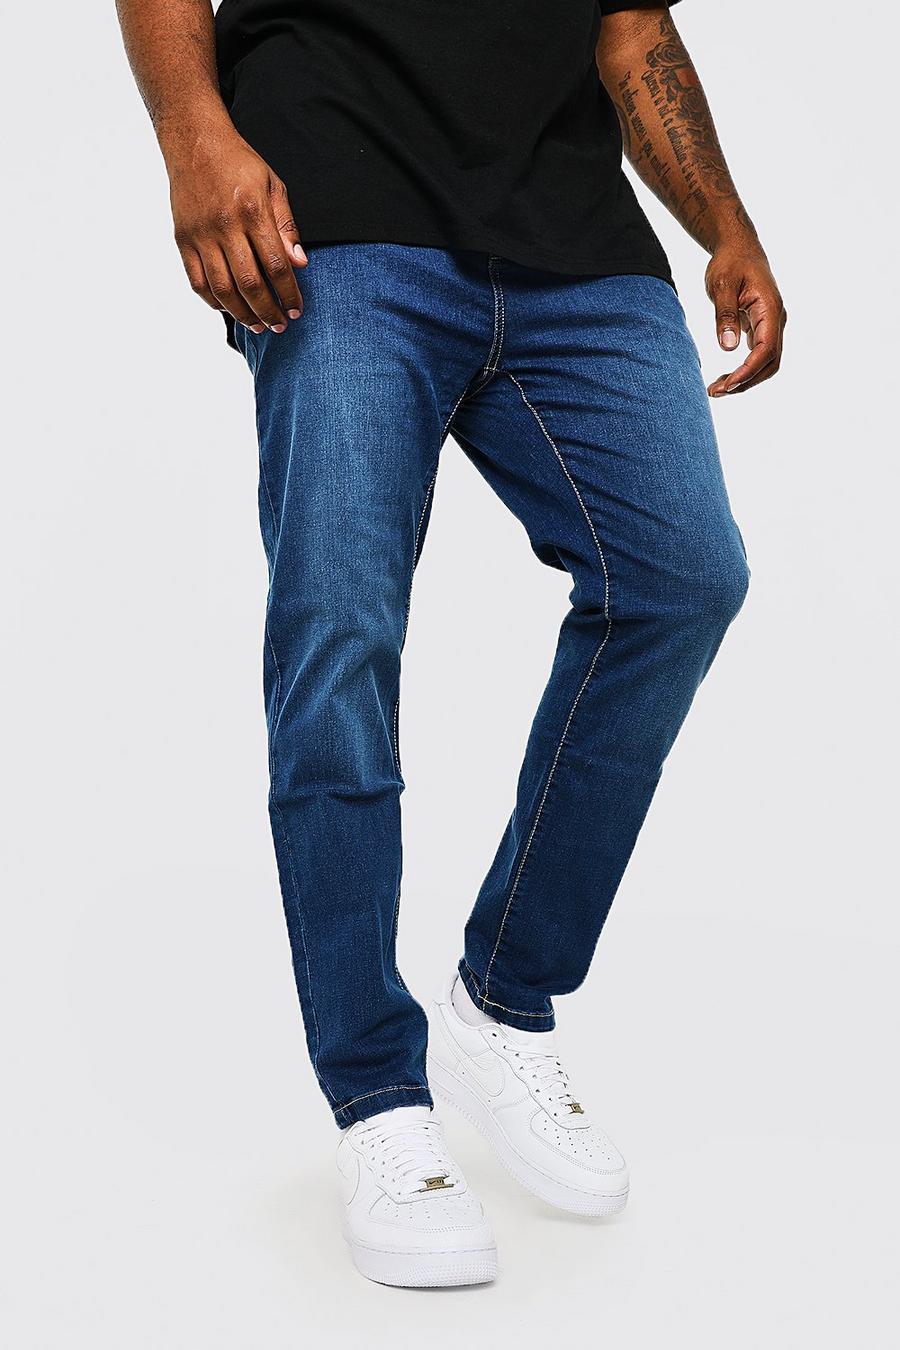 כחול ביניים מכנסי ג'ינס בגזרת סקיני לגברים גדולים וגבוהים image number 1